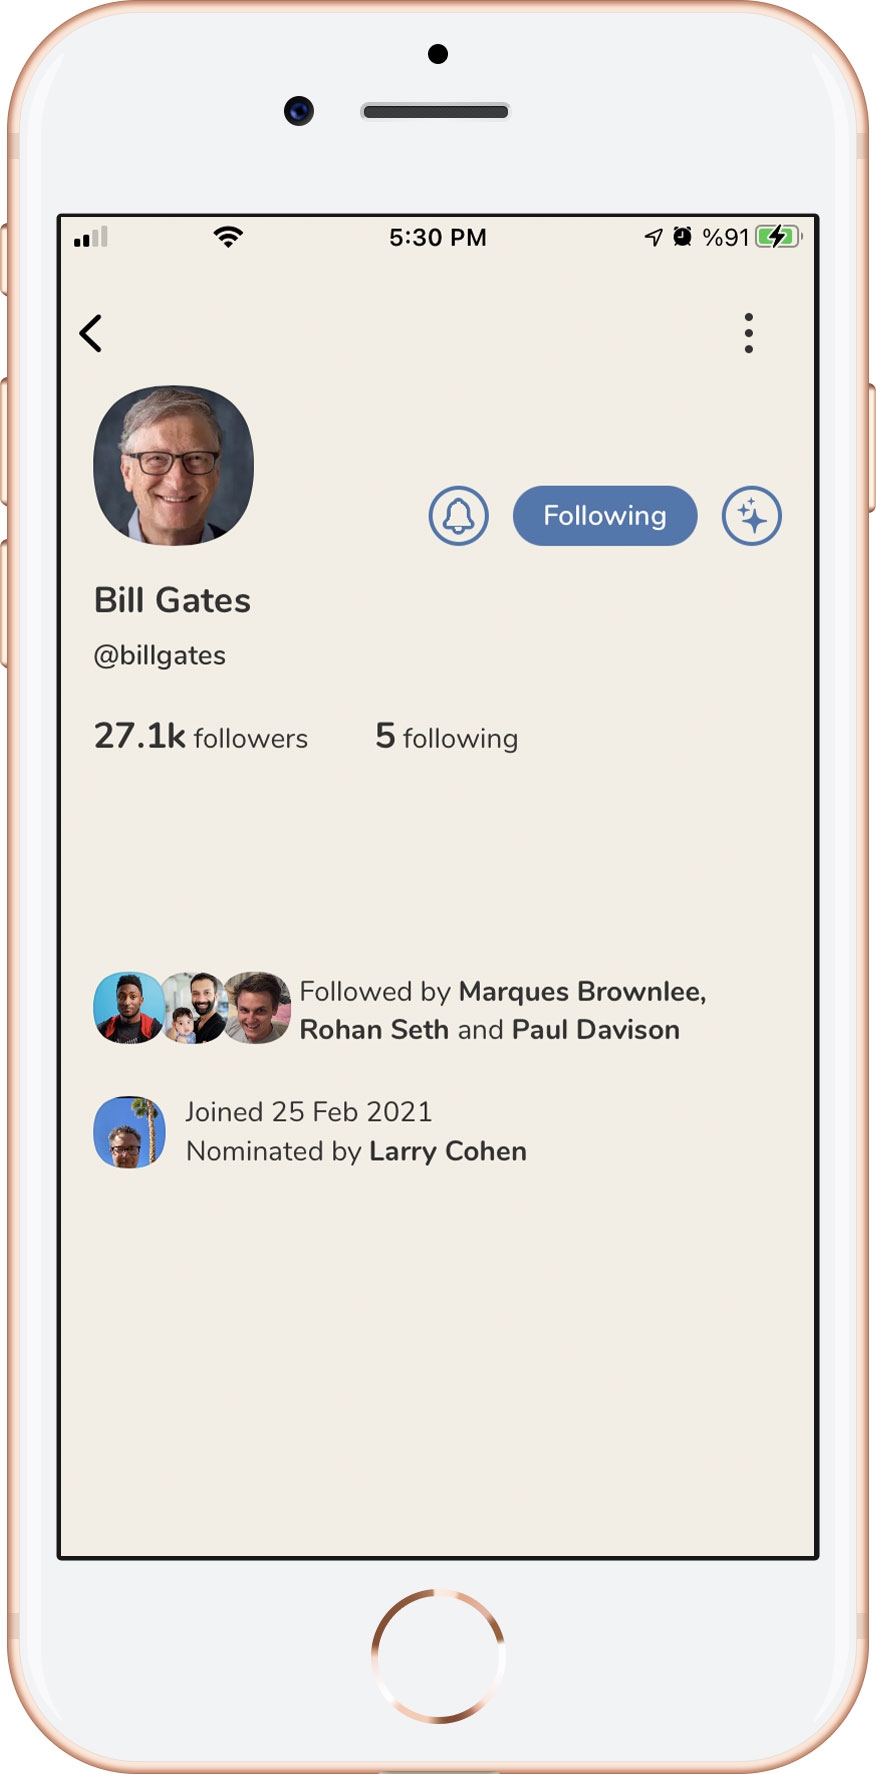 الصفحة الشخصية لبيل غيتس كما تظهر في تطبيق كلوب هاوس